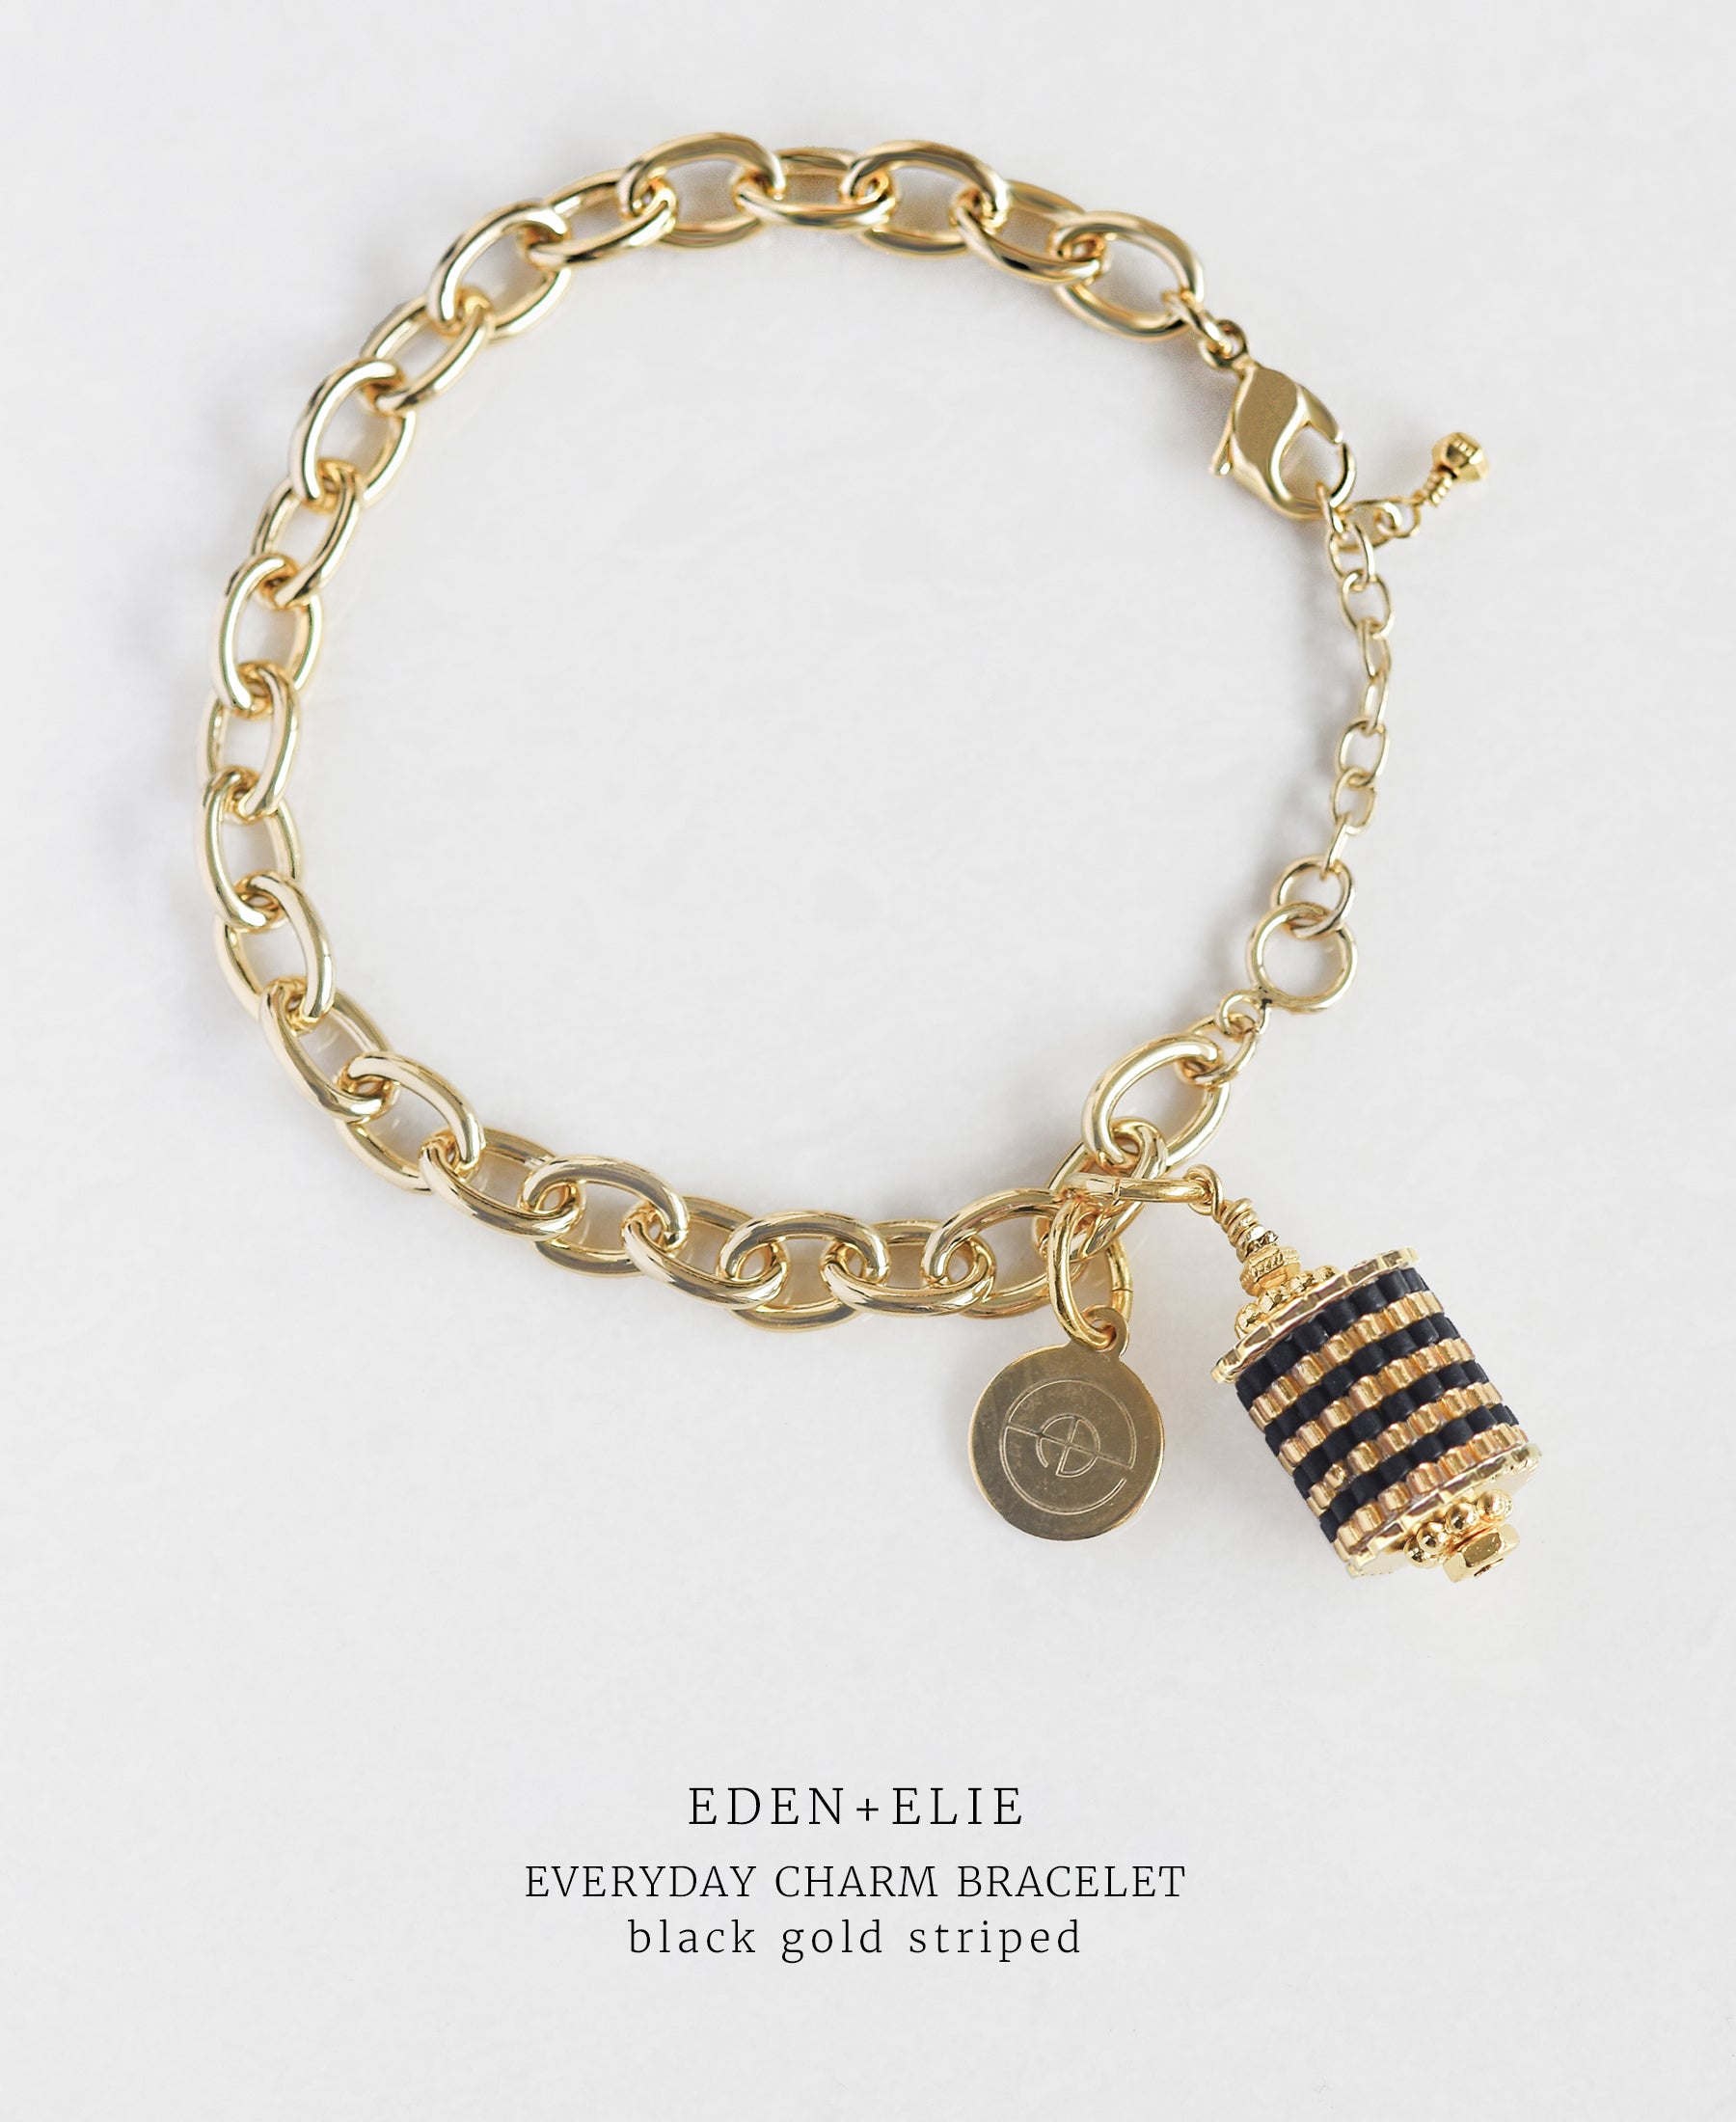 EDEN + ELIE Everyday gold charm bracelet - black gold striped